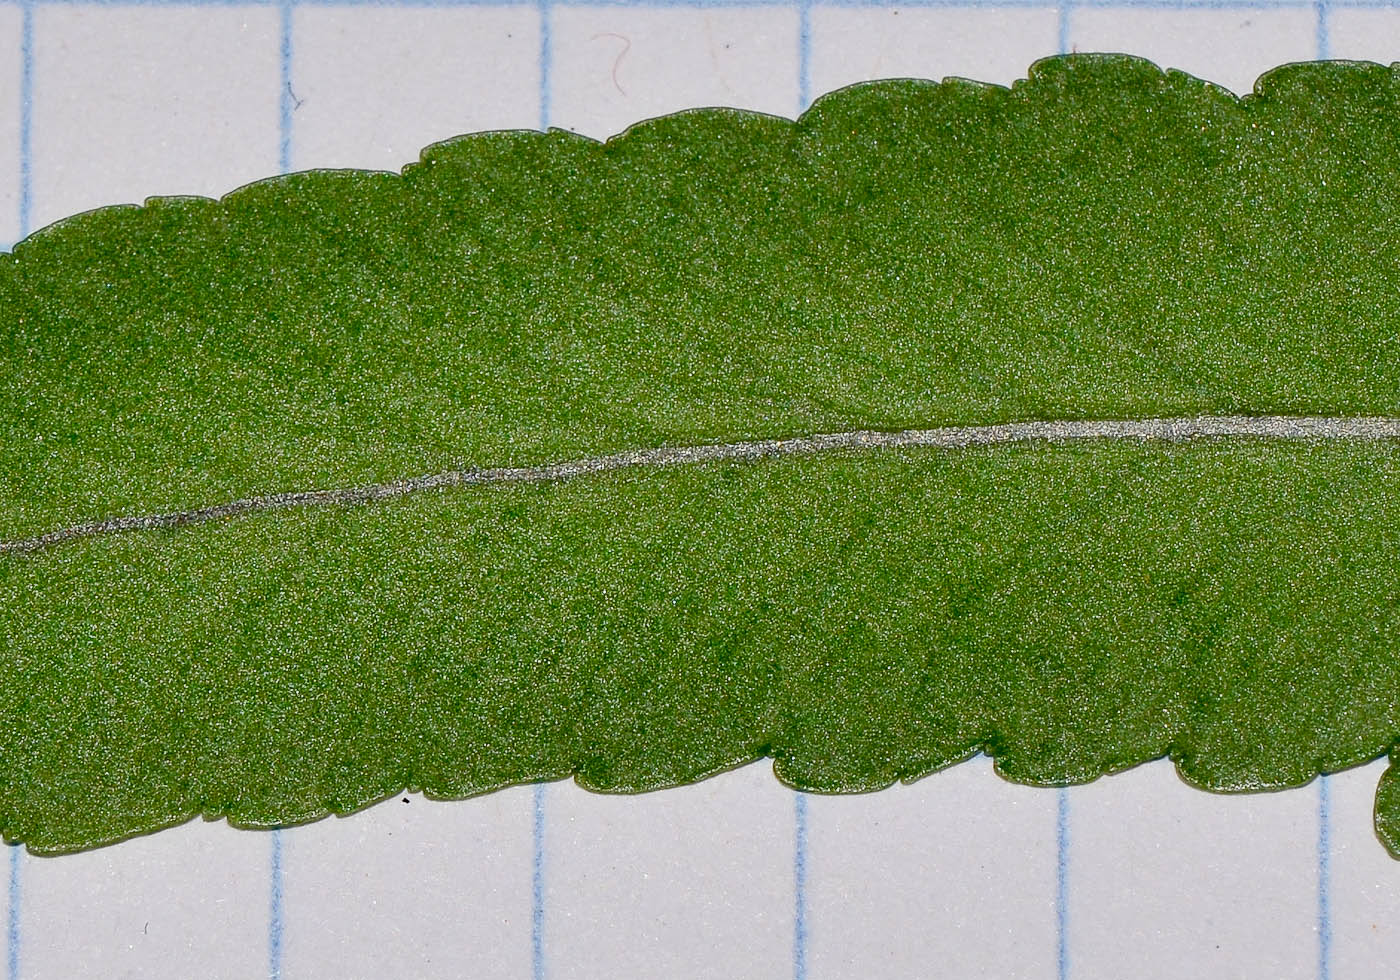 Изображение особи Polypodium cambricum.